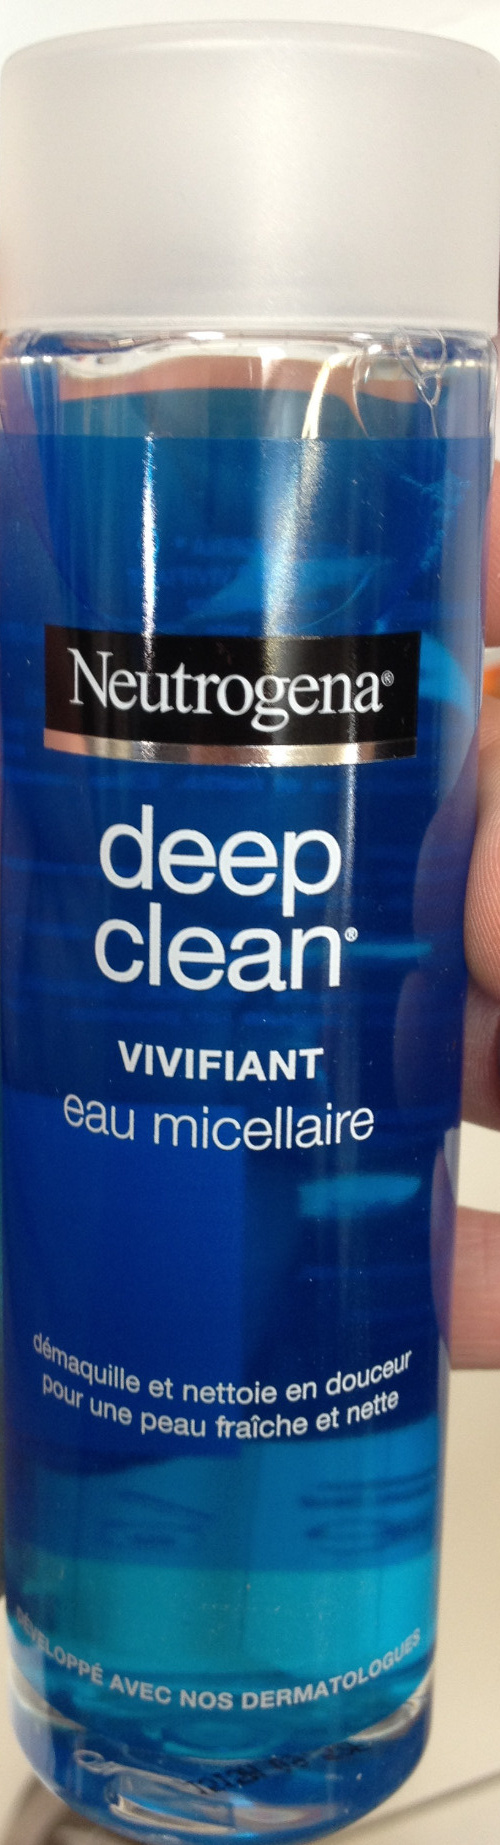 Deep Clean - Produit - fr